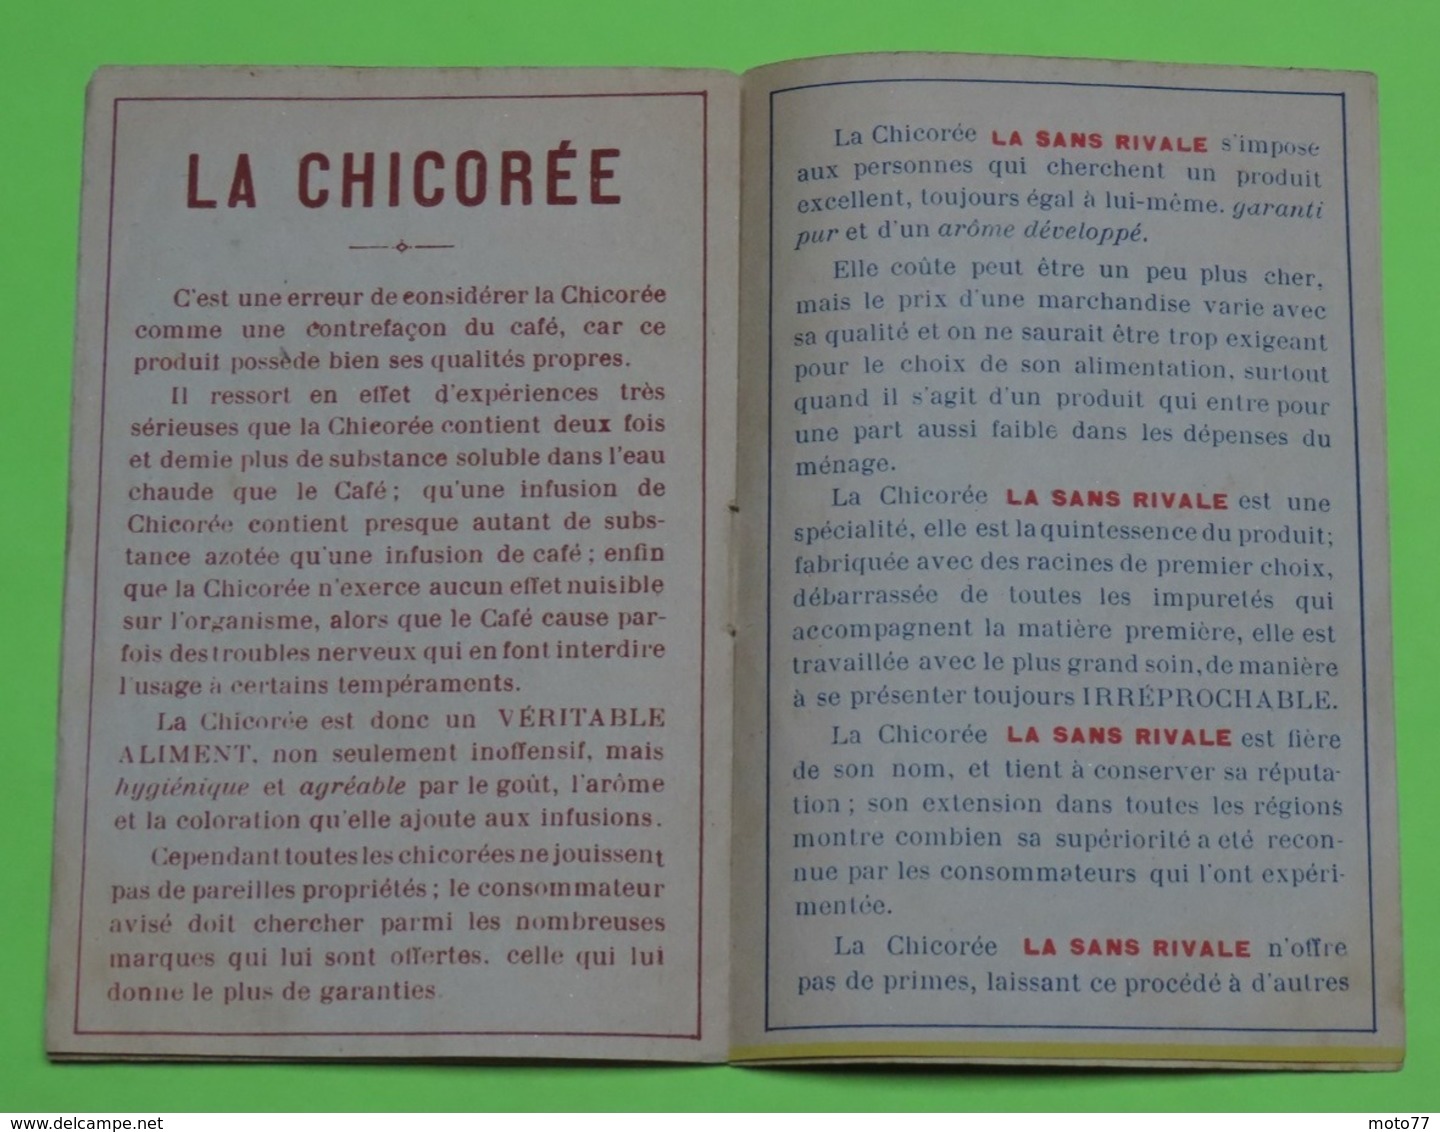 DOCUMENT pub livret CALENDRIER 1914 - FABLE DE LA FONTAINE - 3 fables - 9 x 14 et 12 pages  -Etat d'usage RARE / 249